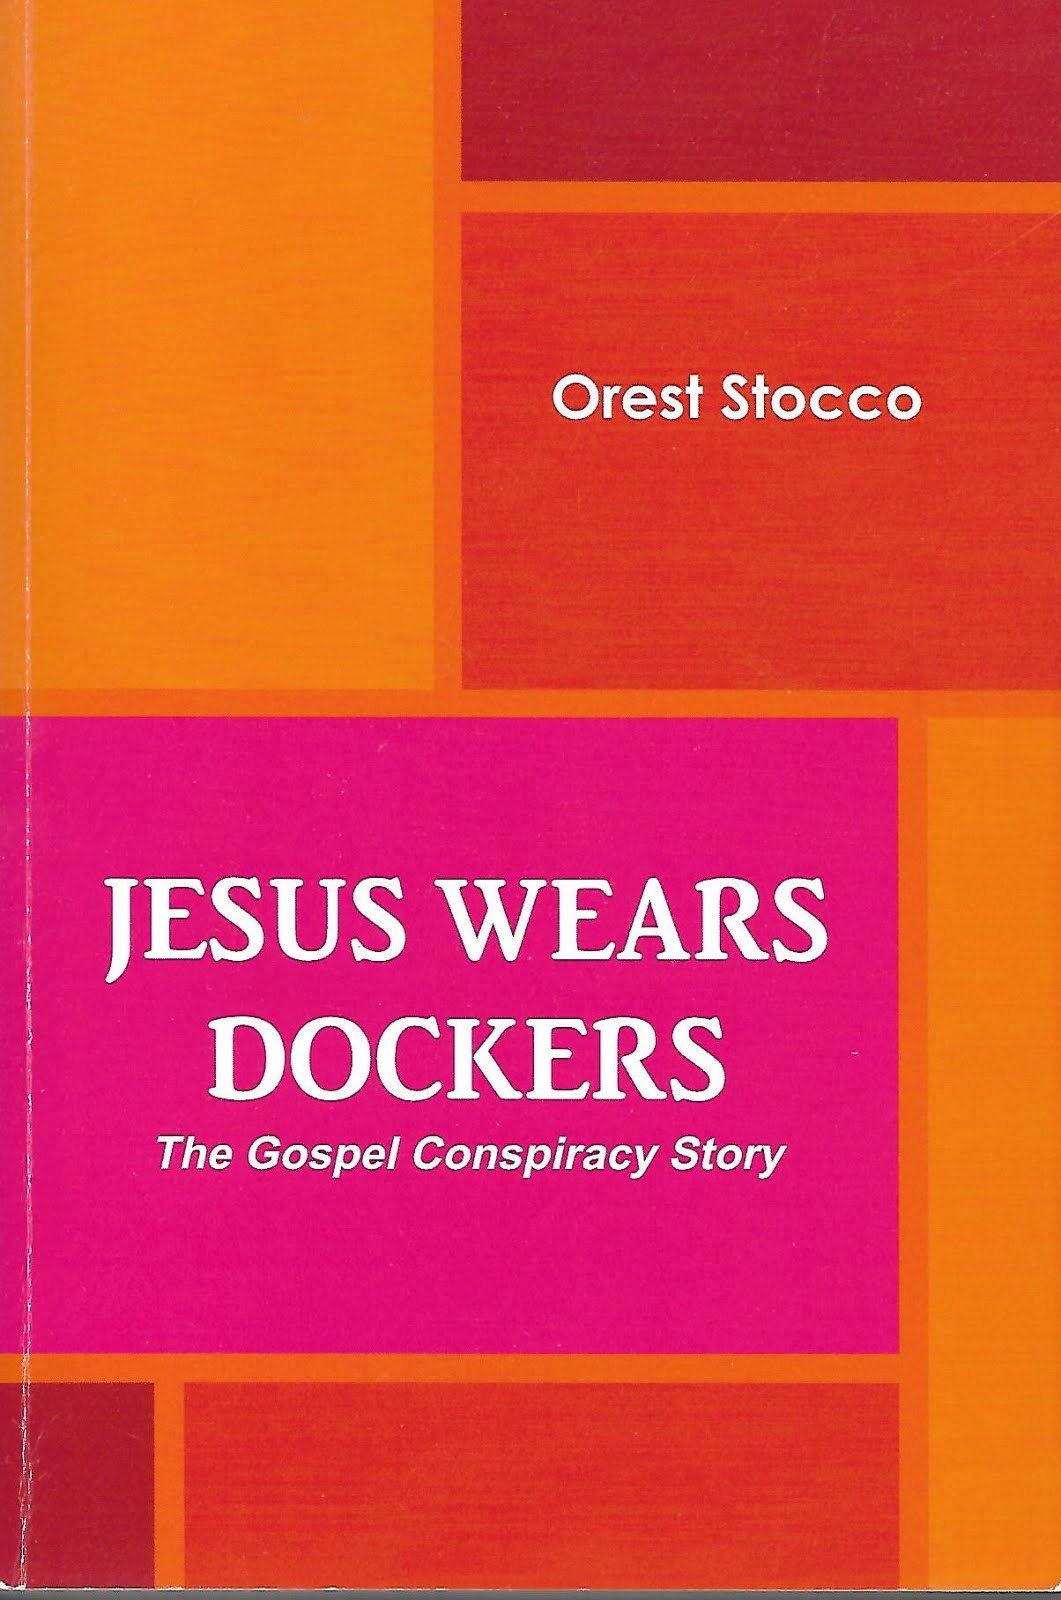 Jesus Wears Dockers